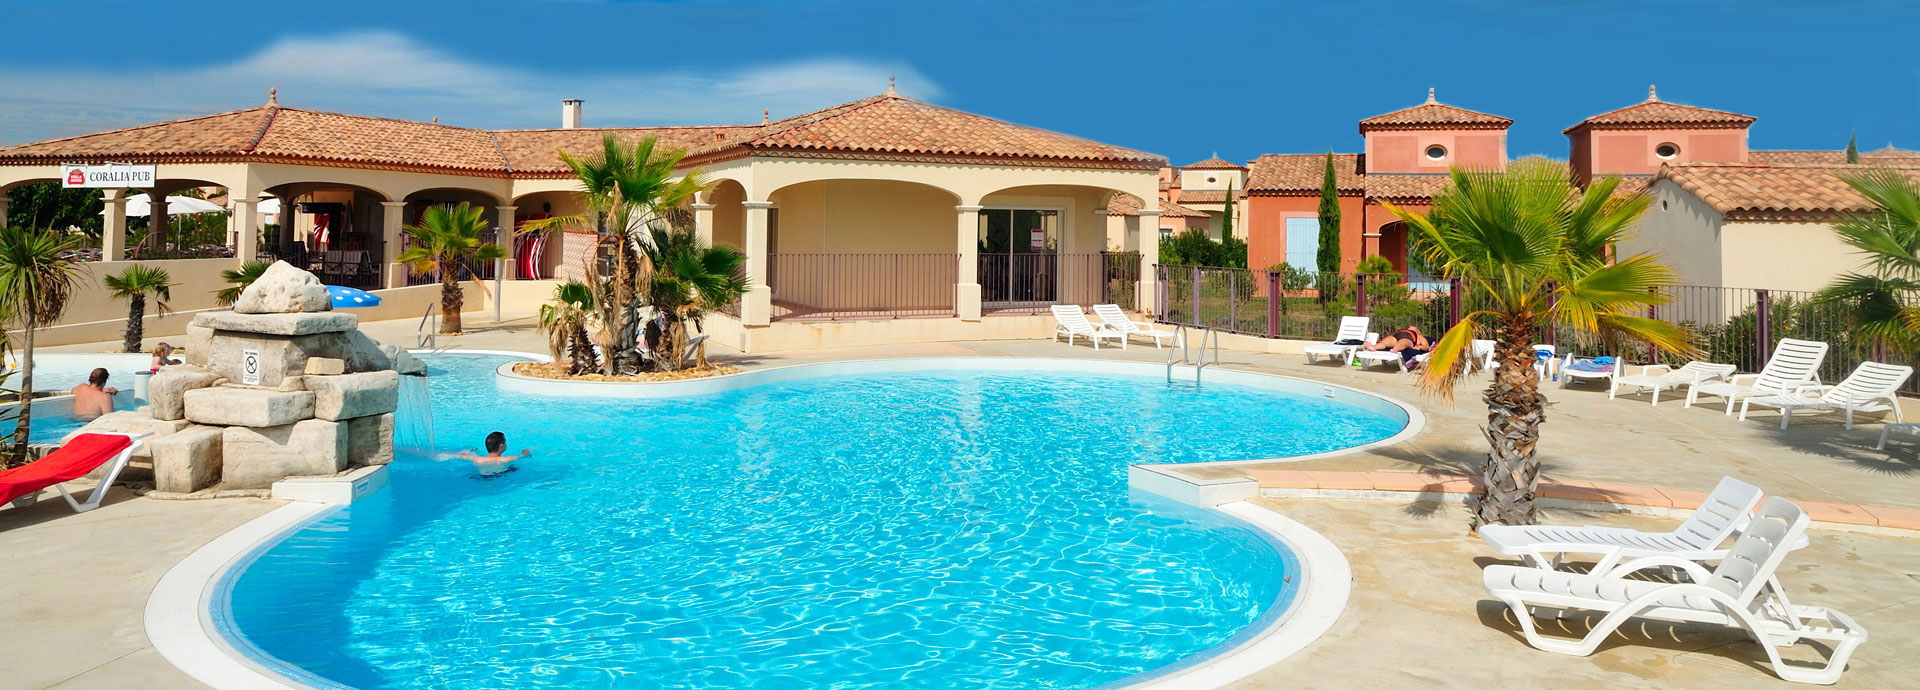 Locations de résidence vacances avec piscine : Coralia Vacances